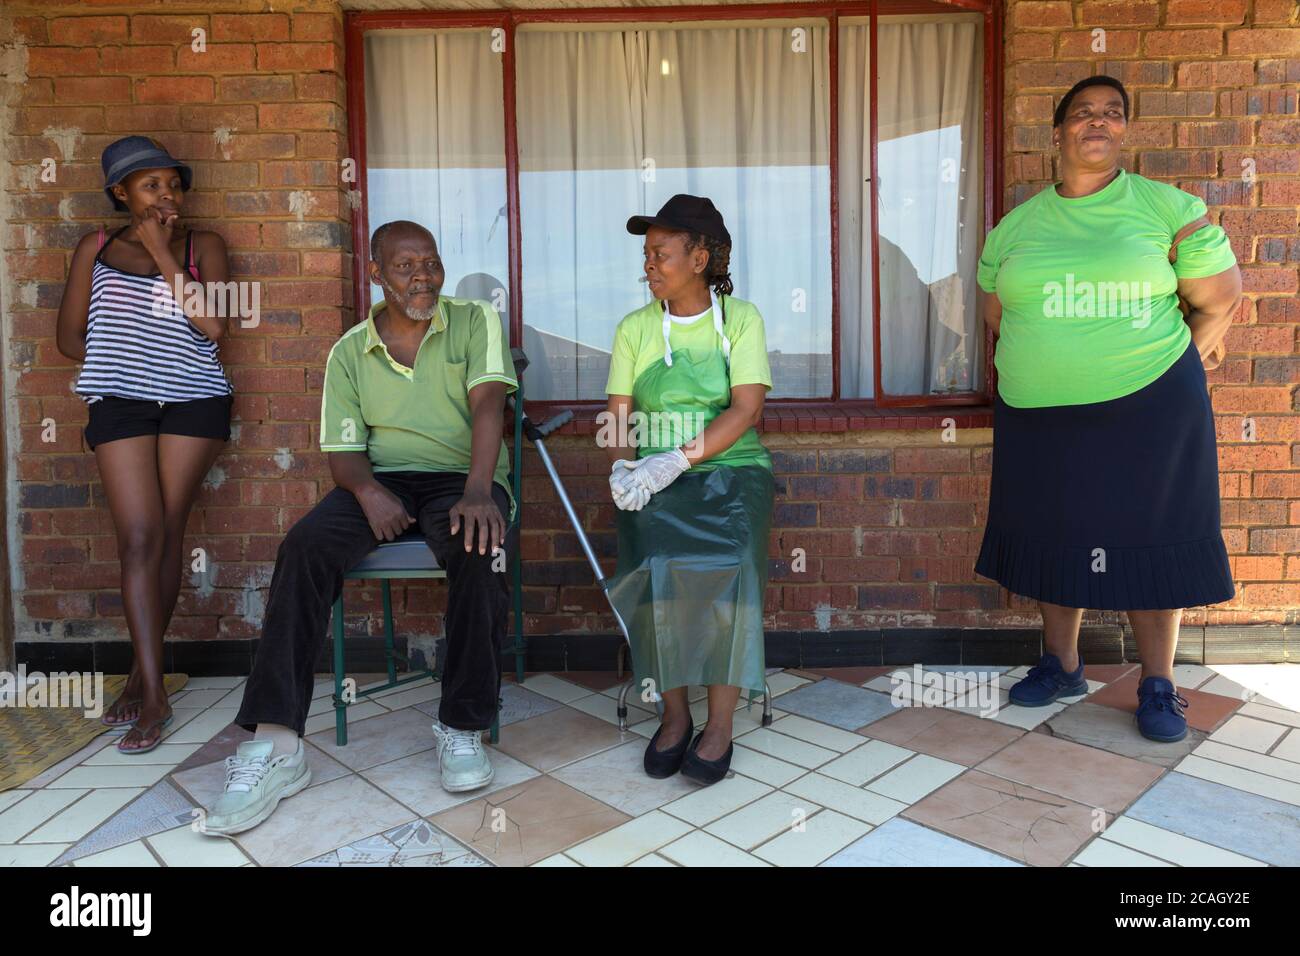 18.10.2018, Johannesburg, Gauteng, Südafrika - Krankenschwestern aus dem häuslichen Pflegedienst kümmern sich um einen AIDS-Patienten zu Hause. Diakonie AIDS Ministy Projekte o Stockfoto